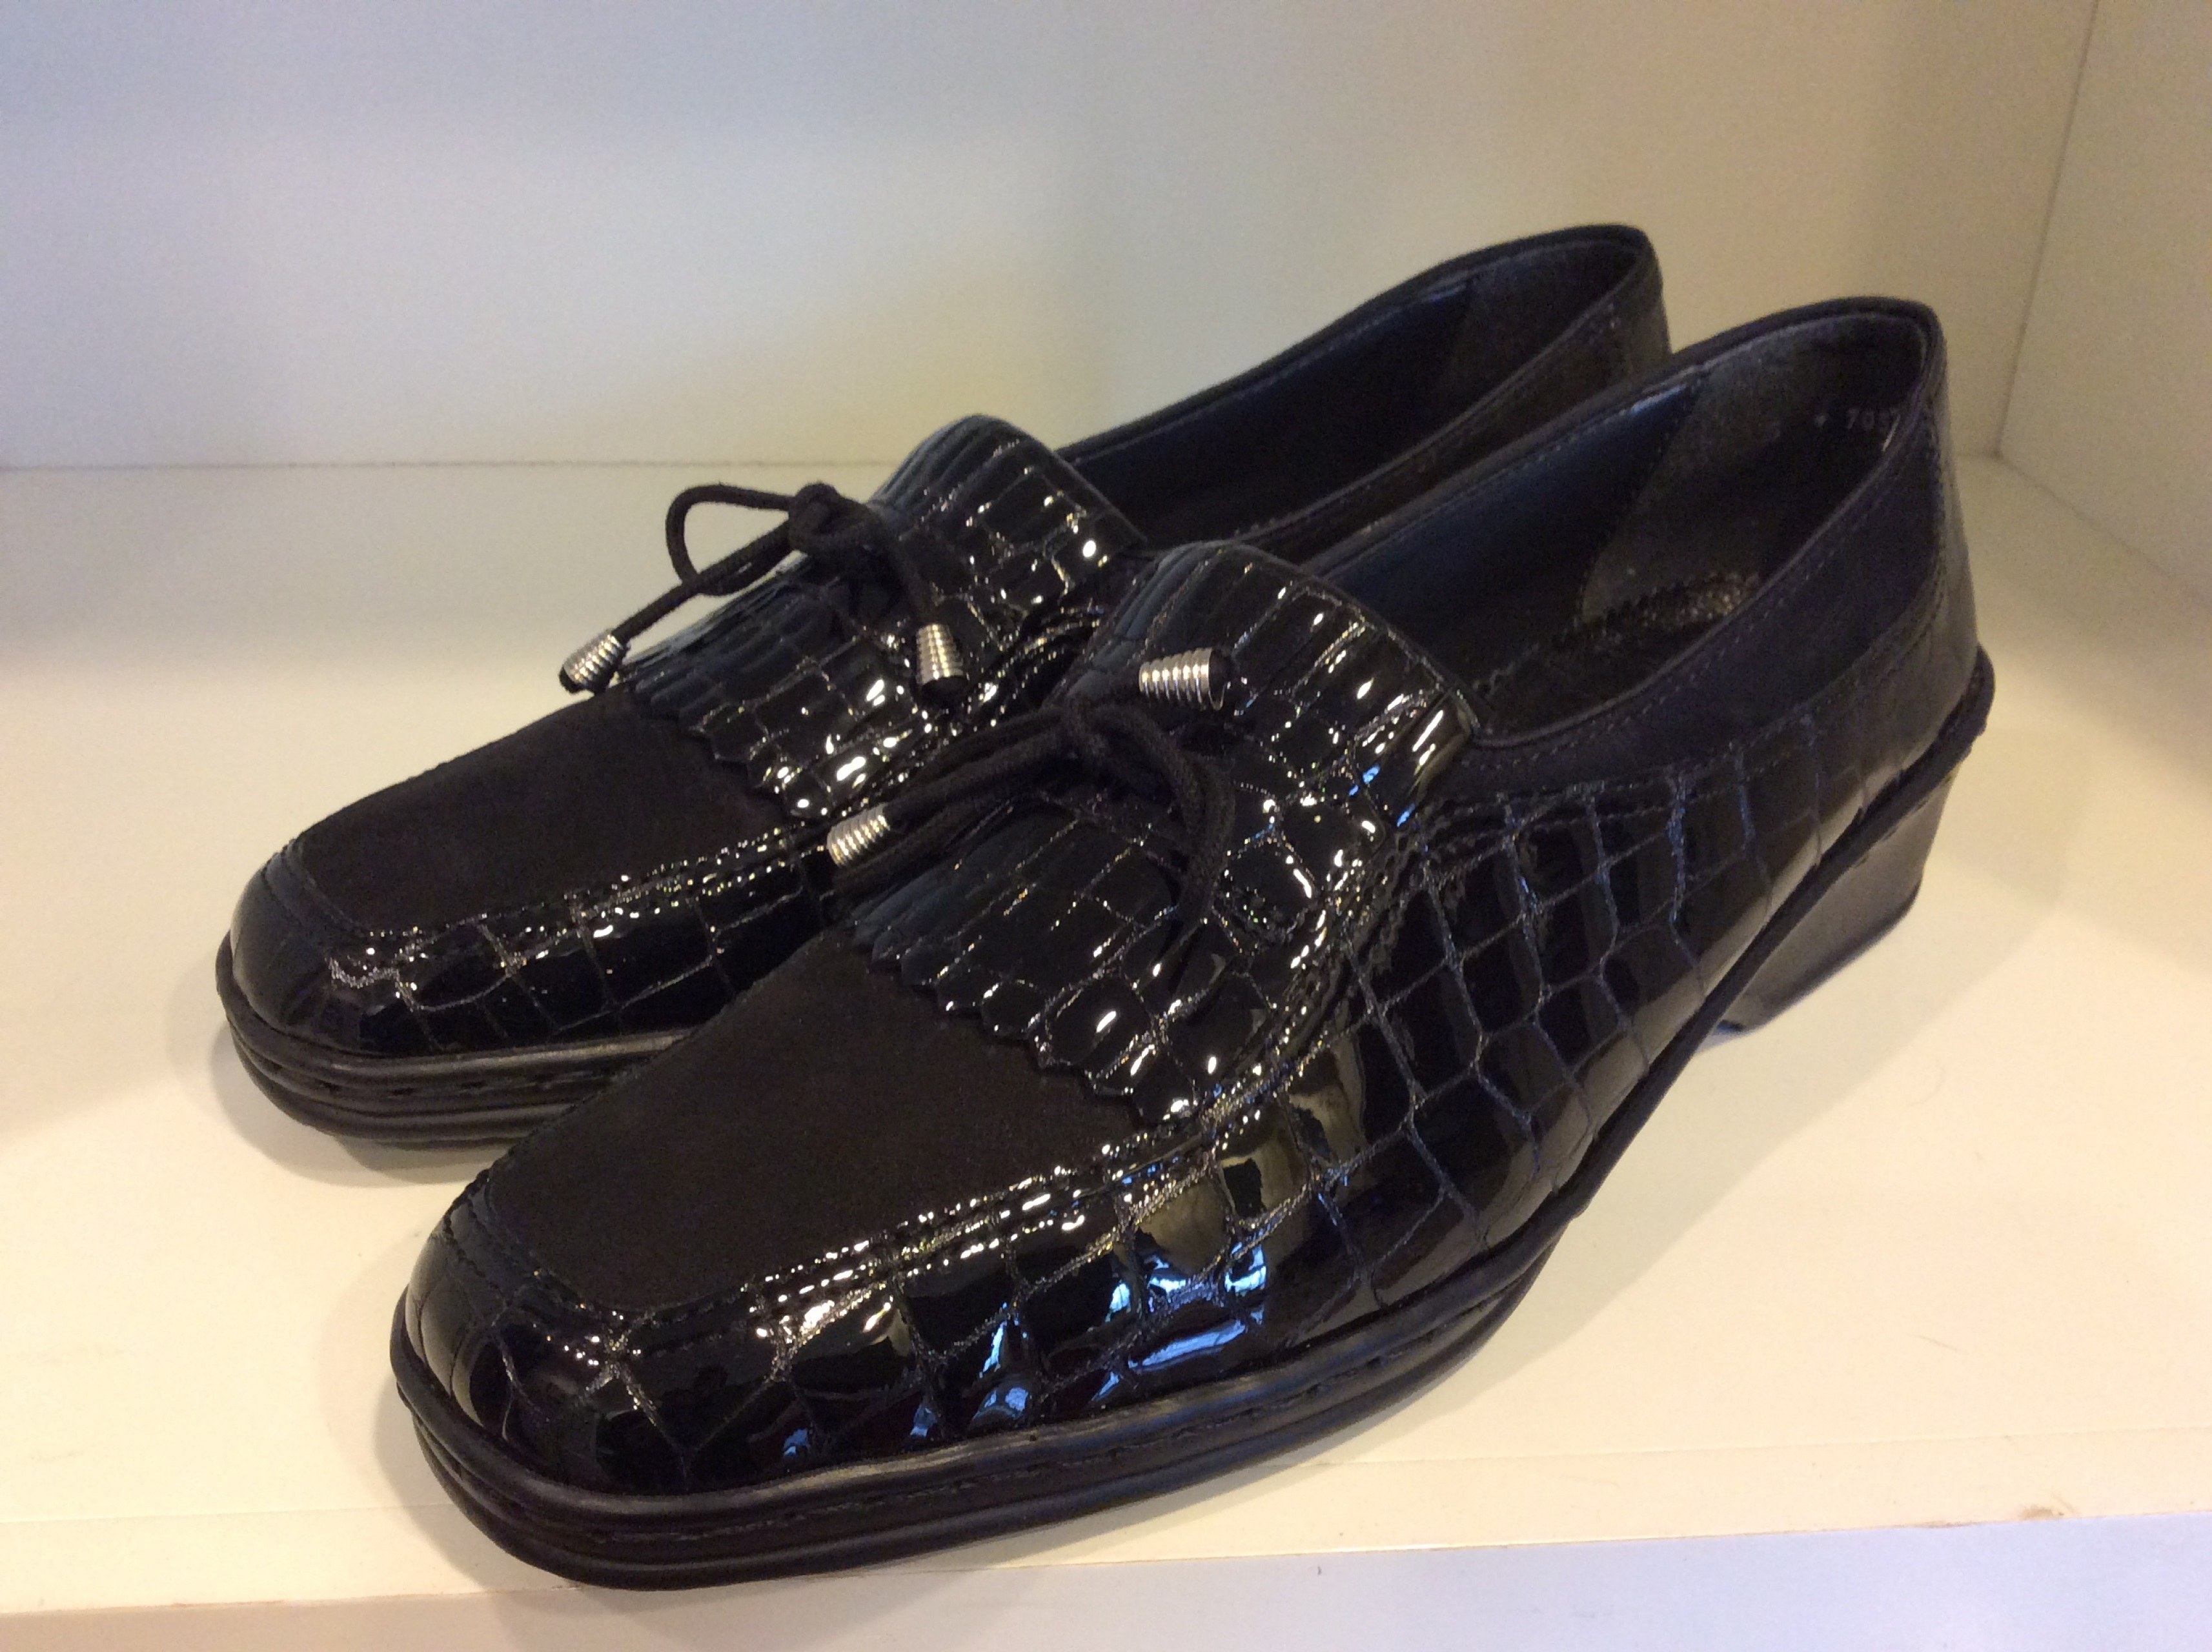 Ara moc Croc Patent Leather Shoes sz 7.5